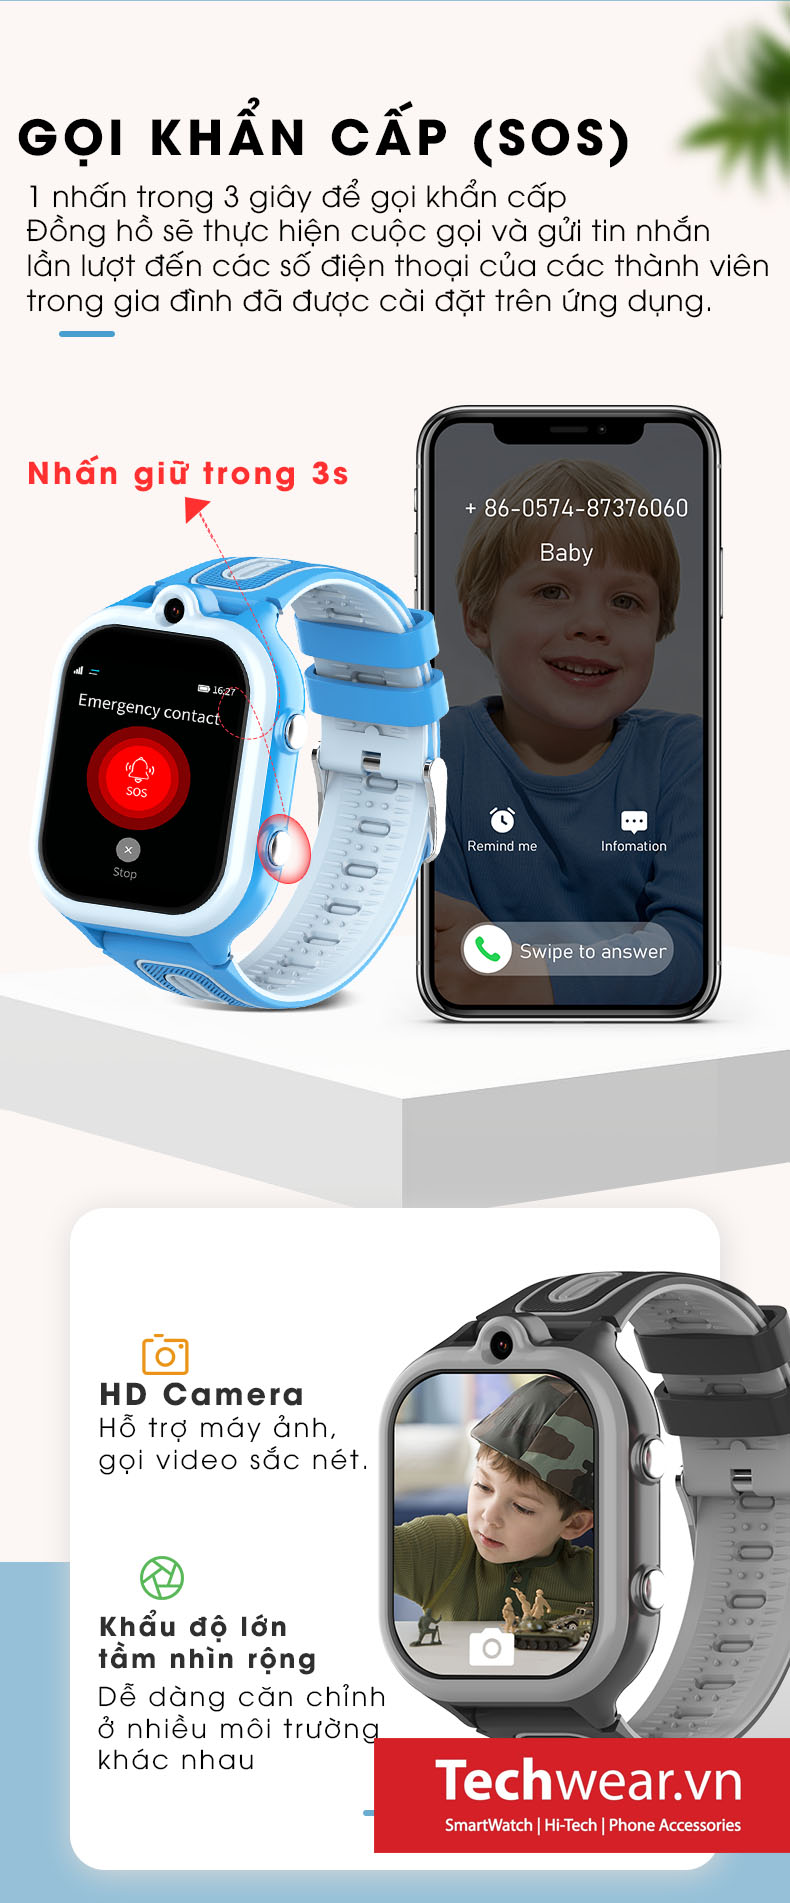 Techwear.vn bán đồng hồ thông minh trẻ em Wonlex KT29